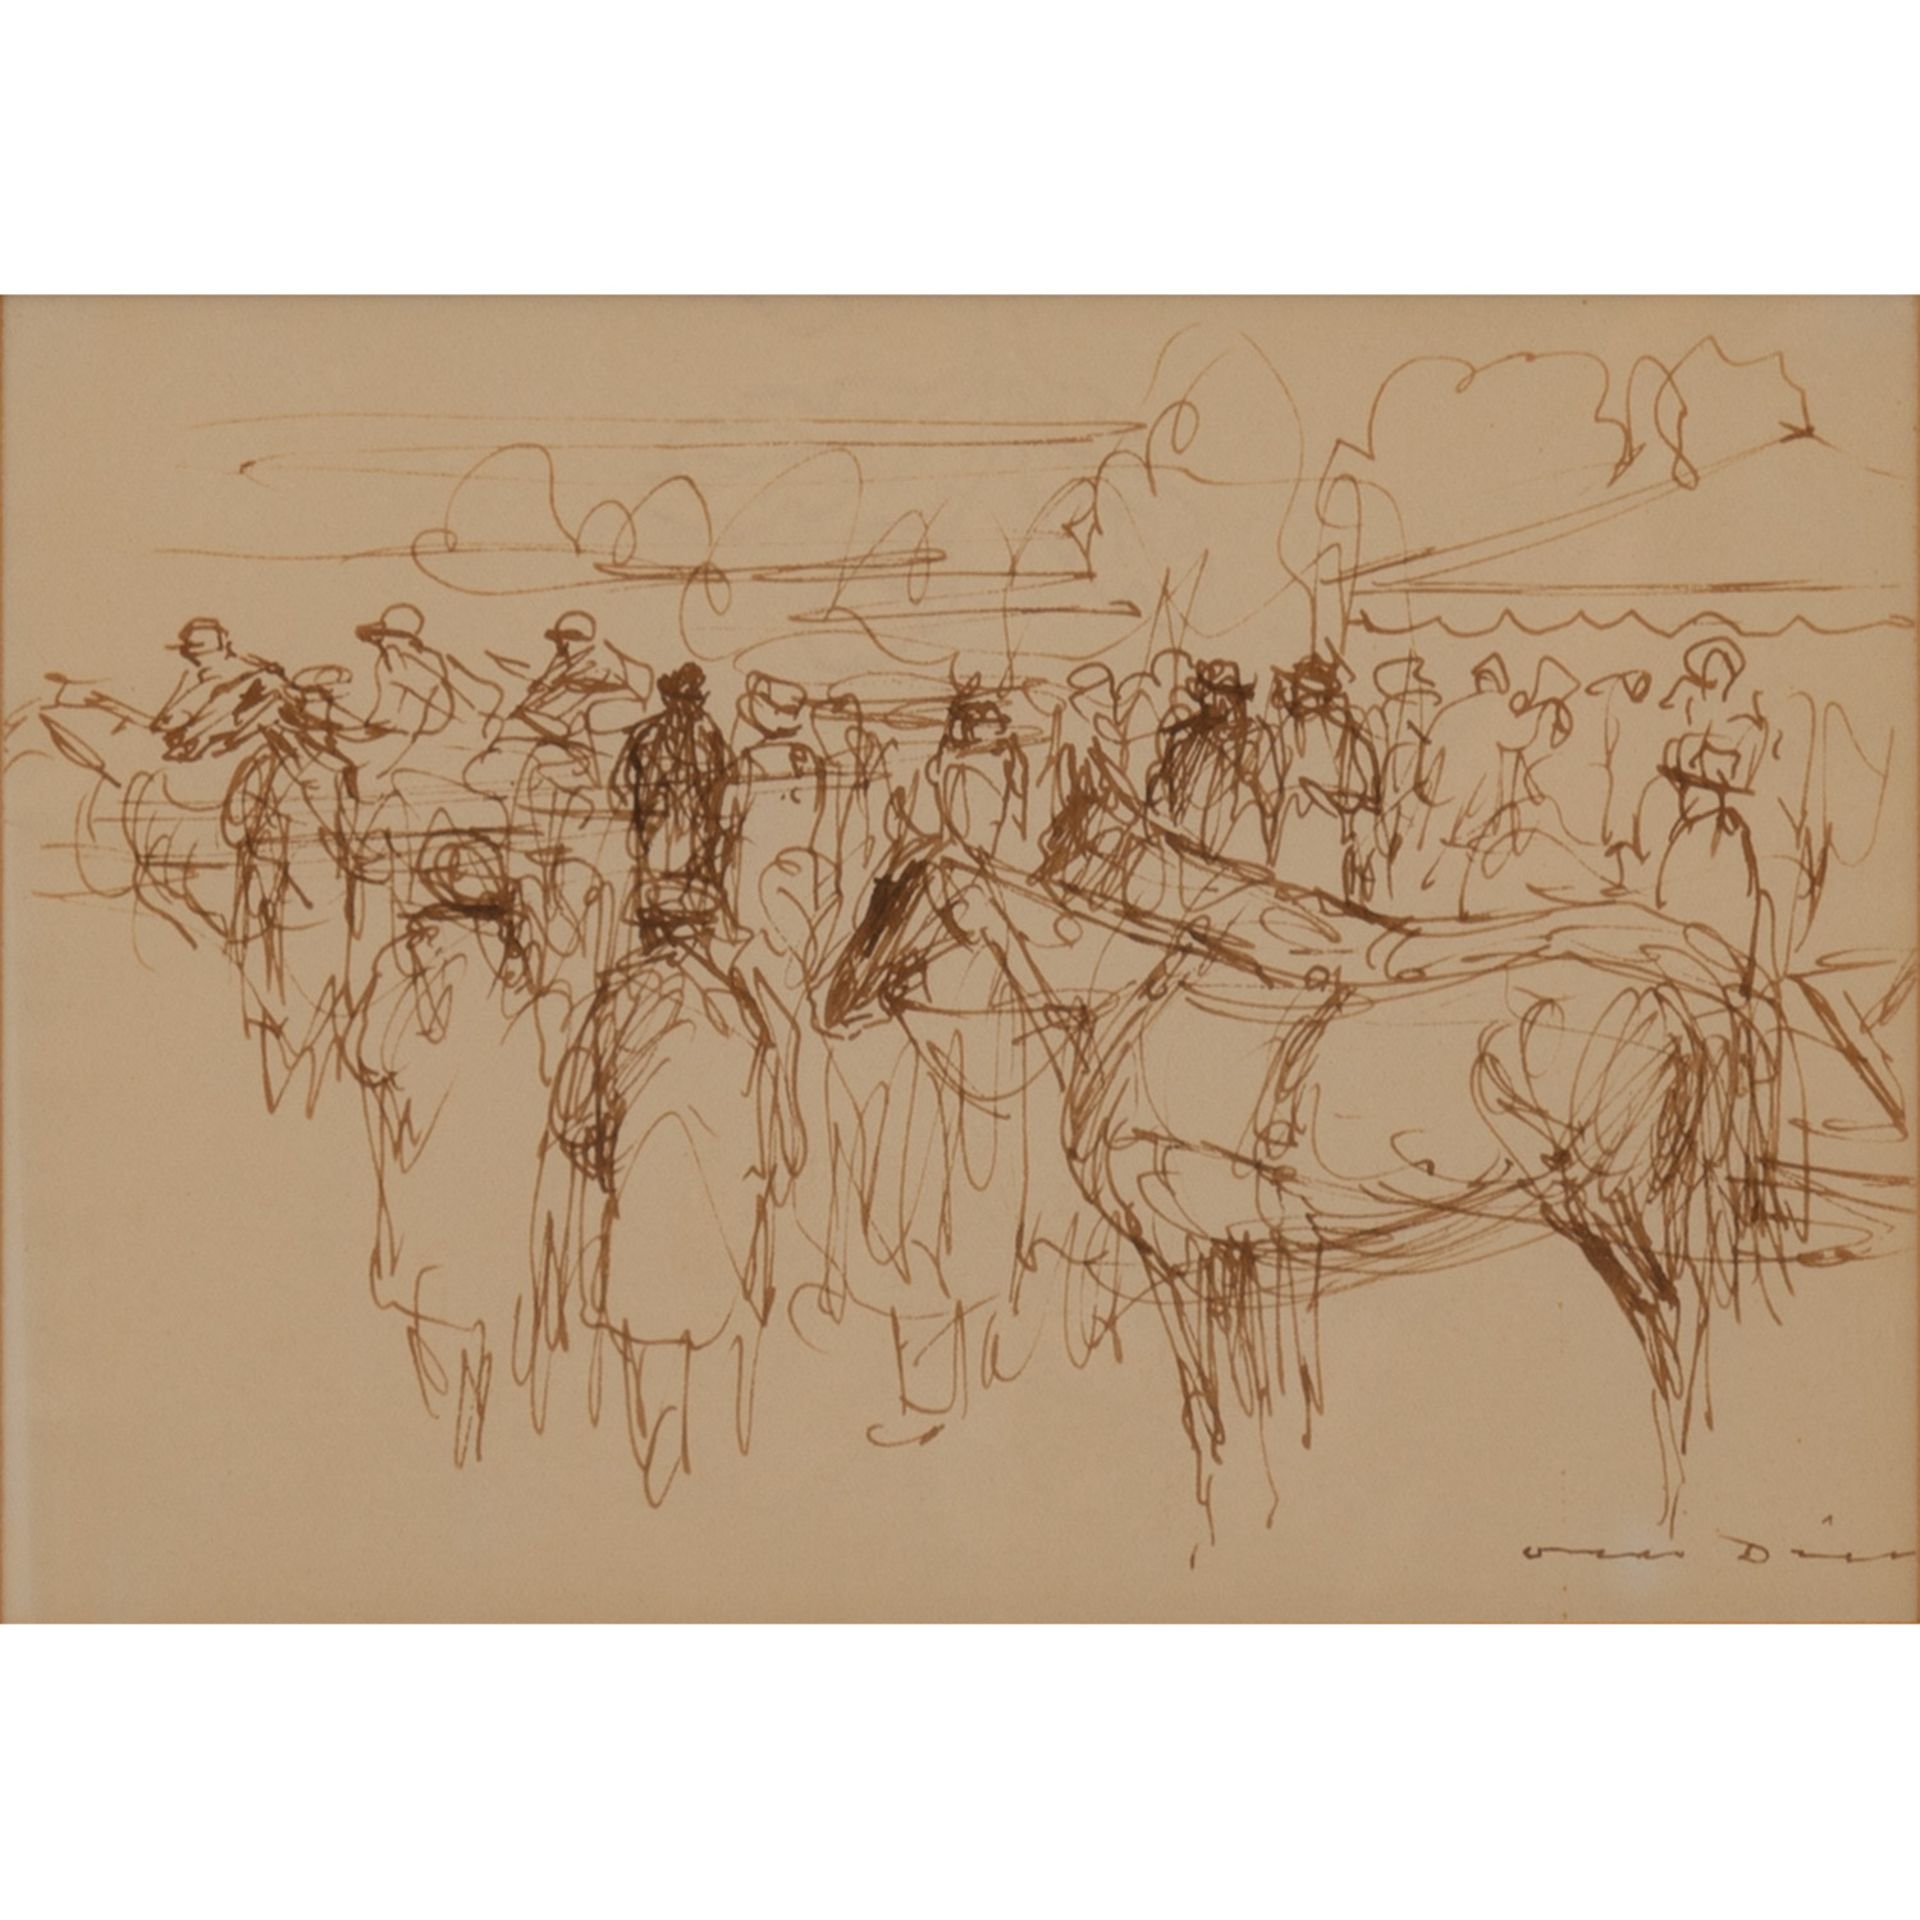 DILL, OTTO (1884-1957) "Pferderennen"